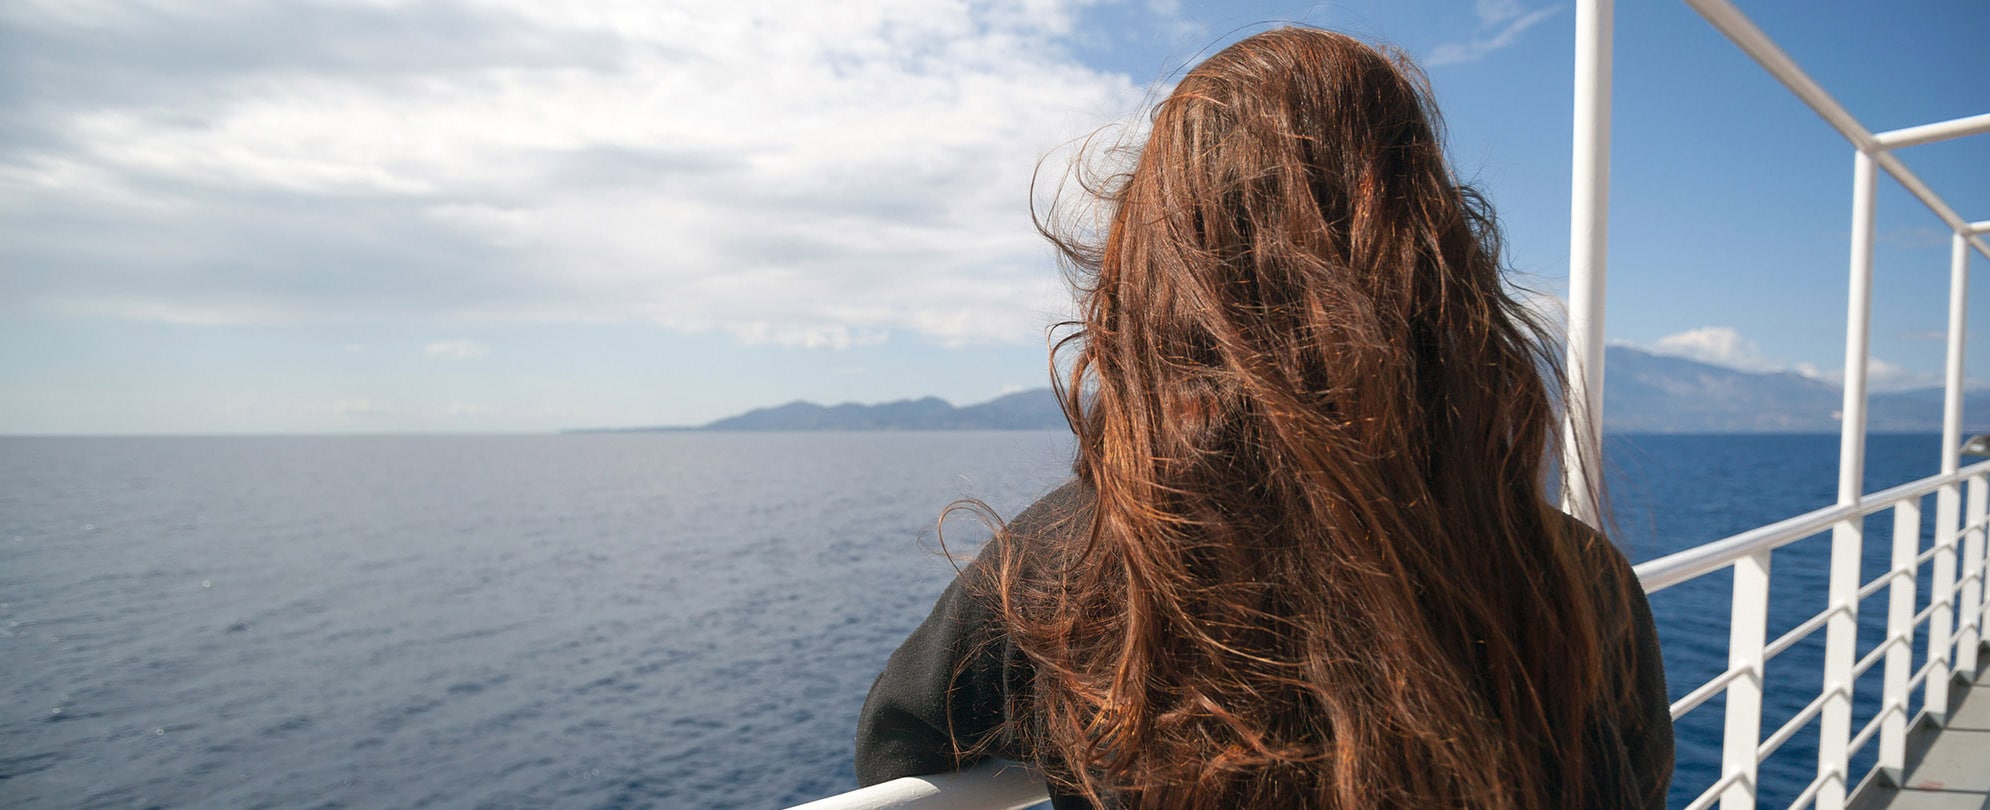 Passenger of cruise ship looking at sea